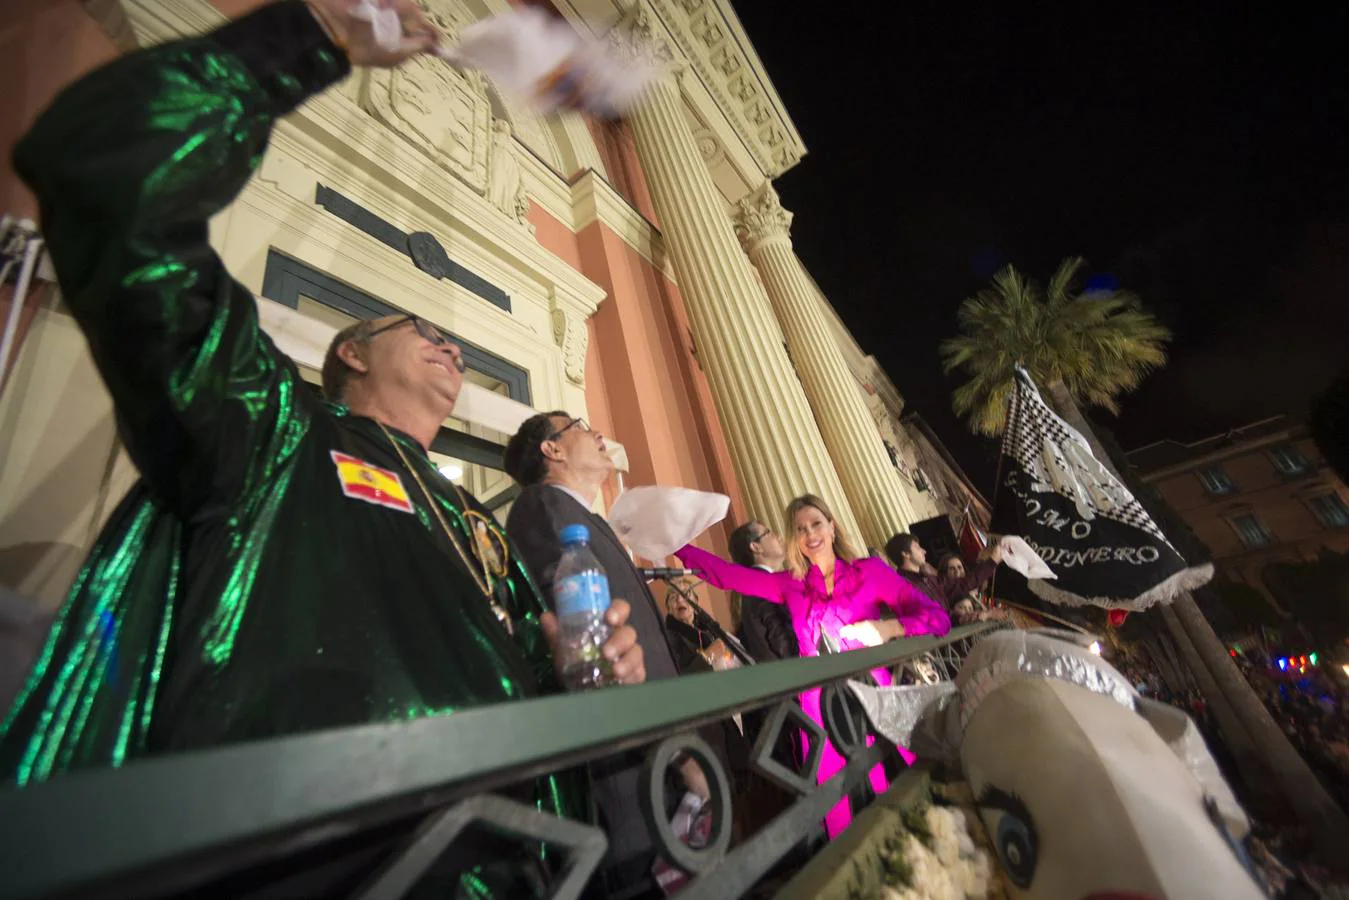 Alicia Hernández, directora de Dolores Promesas, dedicó su discurso al niño de Almería tras ensalzar la magia de Murcia. El desfile del Testamento de la Sardina ofreció espectáculo y juguetes a los asistentes.